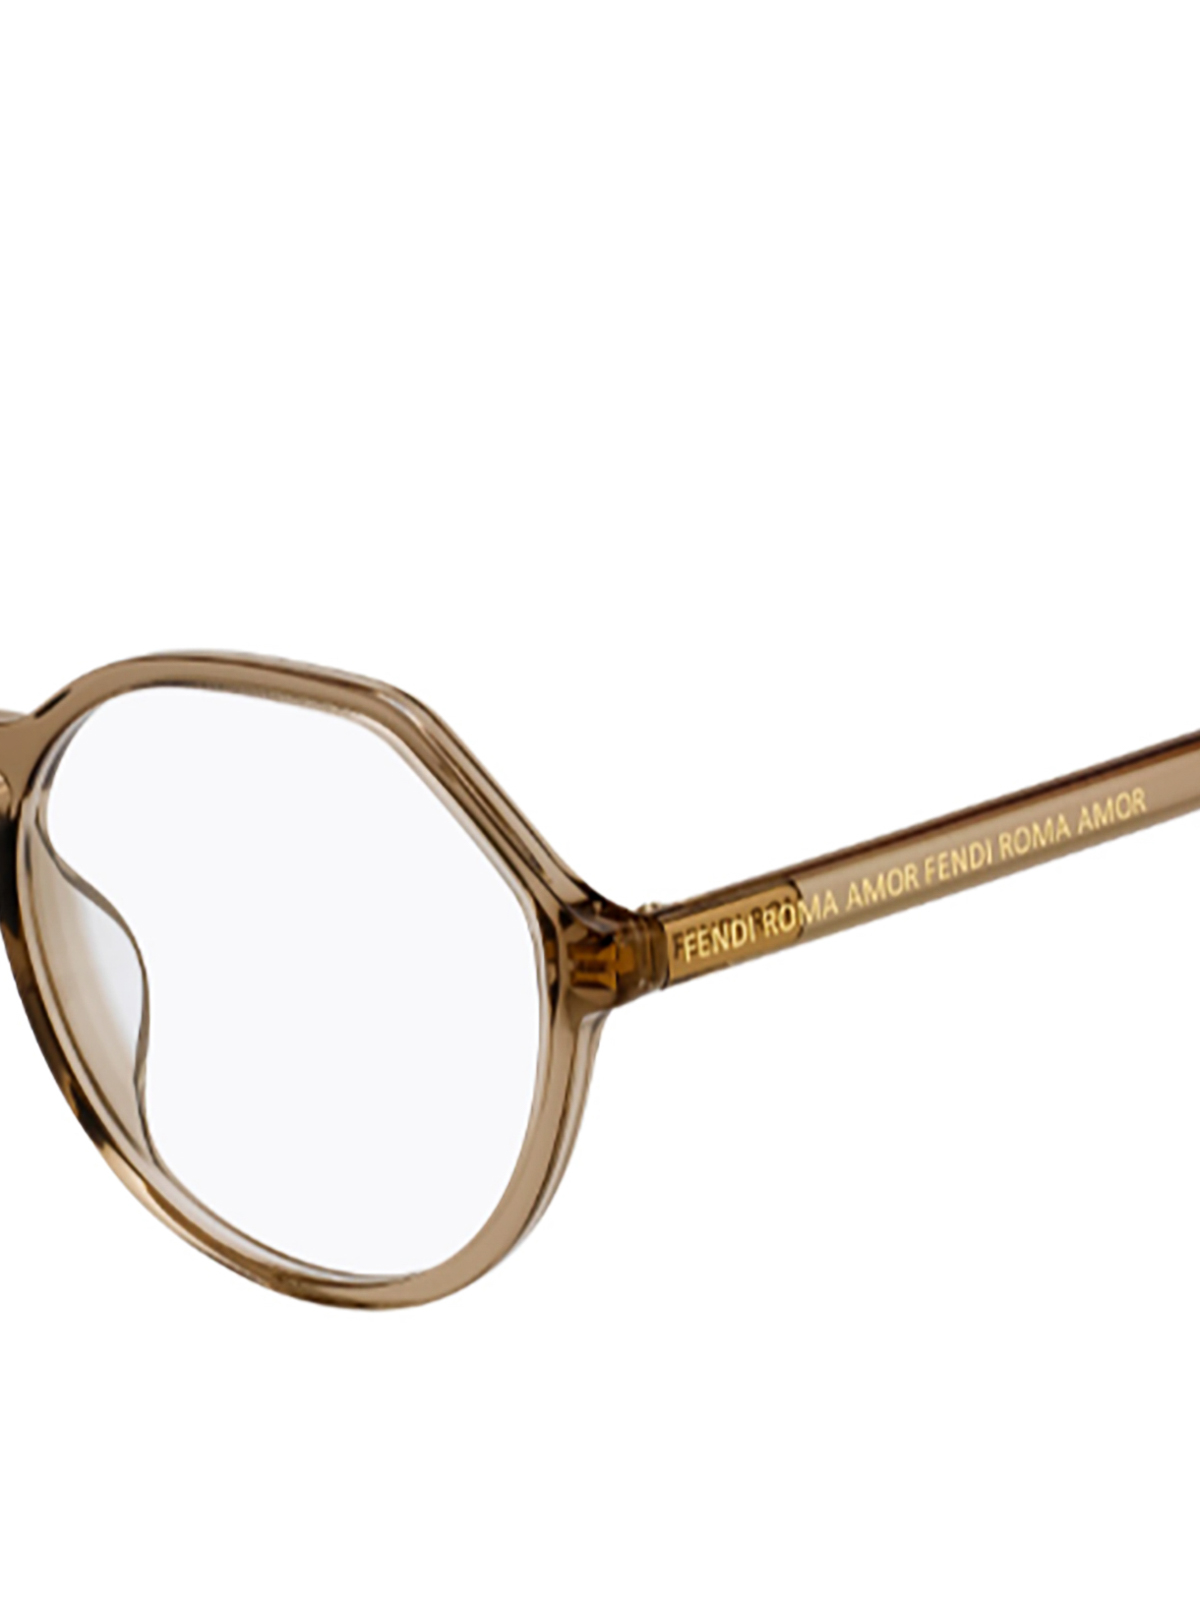 fendi round eyeglasses